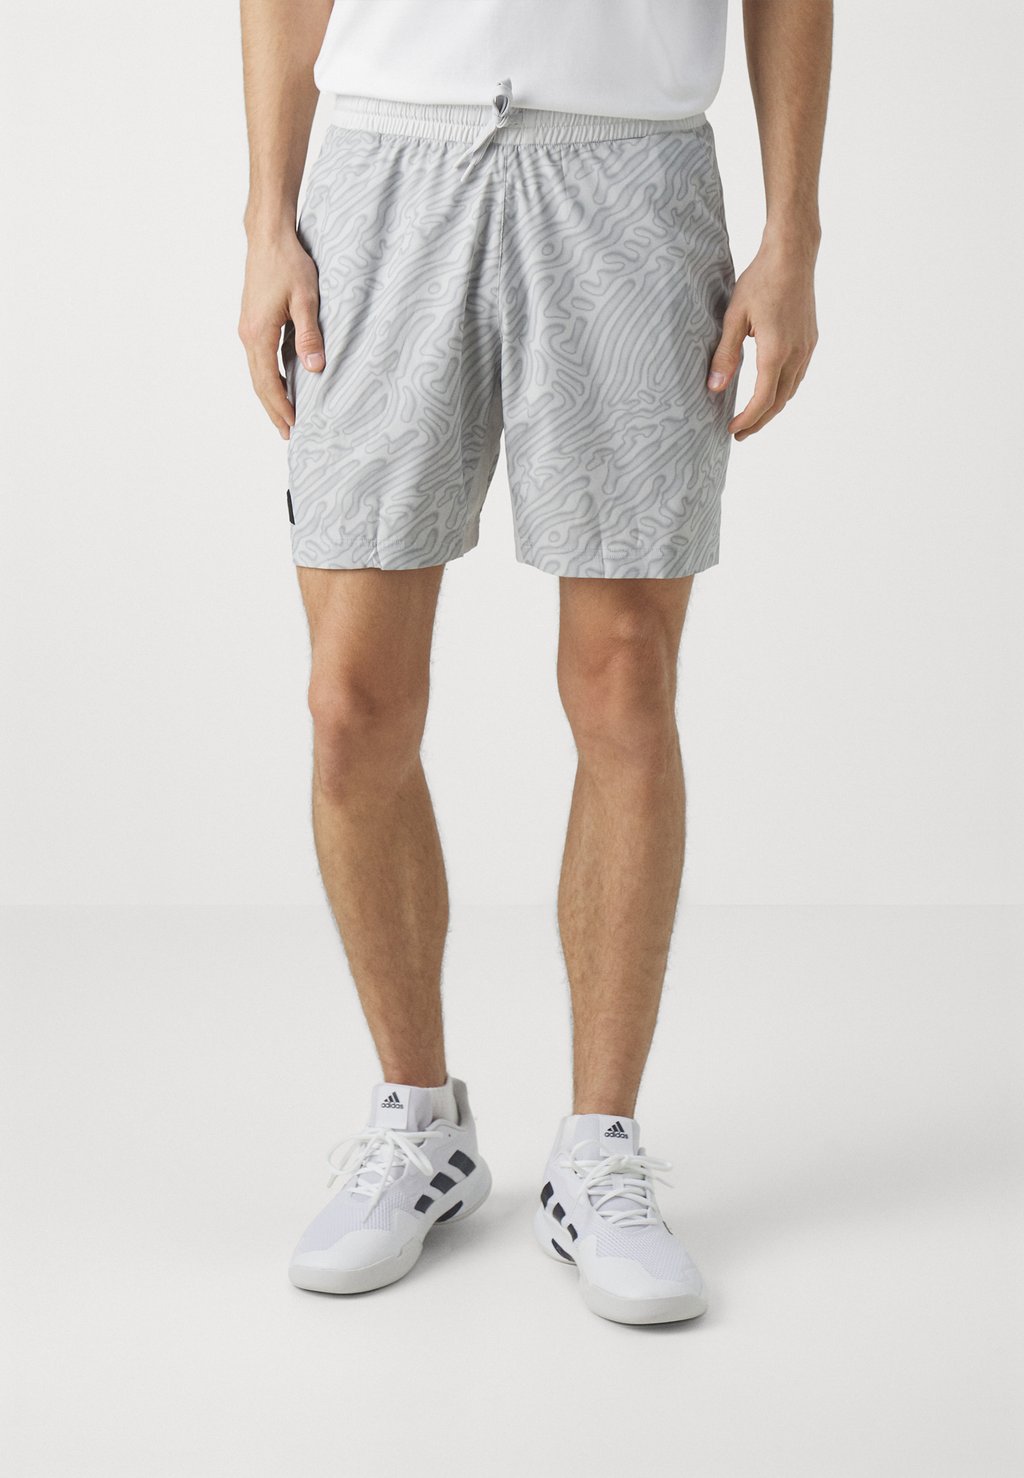 Шорты спортивные Ergo Short Pro Adidas, цвет grey one/solid grey брюки sdtravis 6198065 solid цвет dar grey m